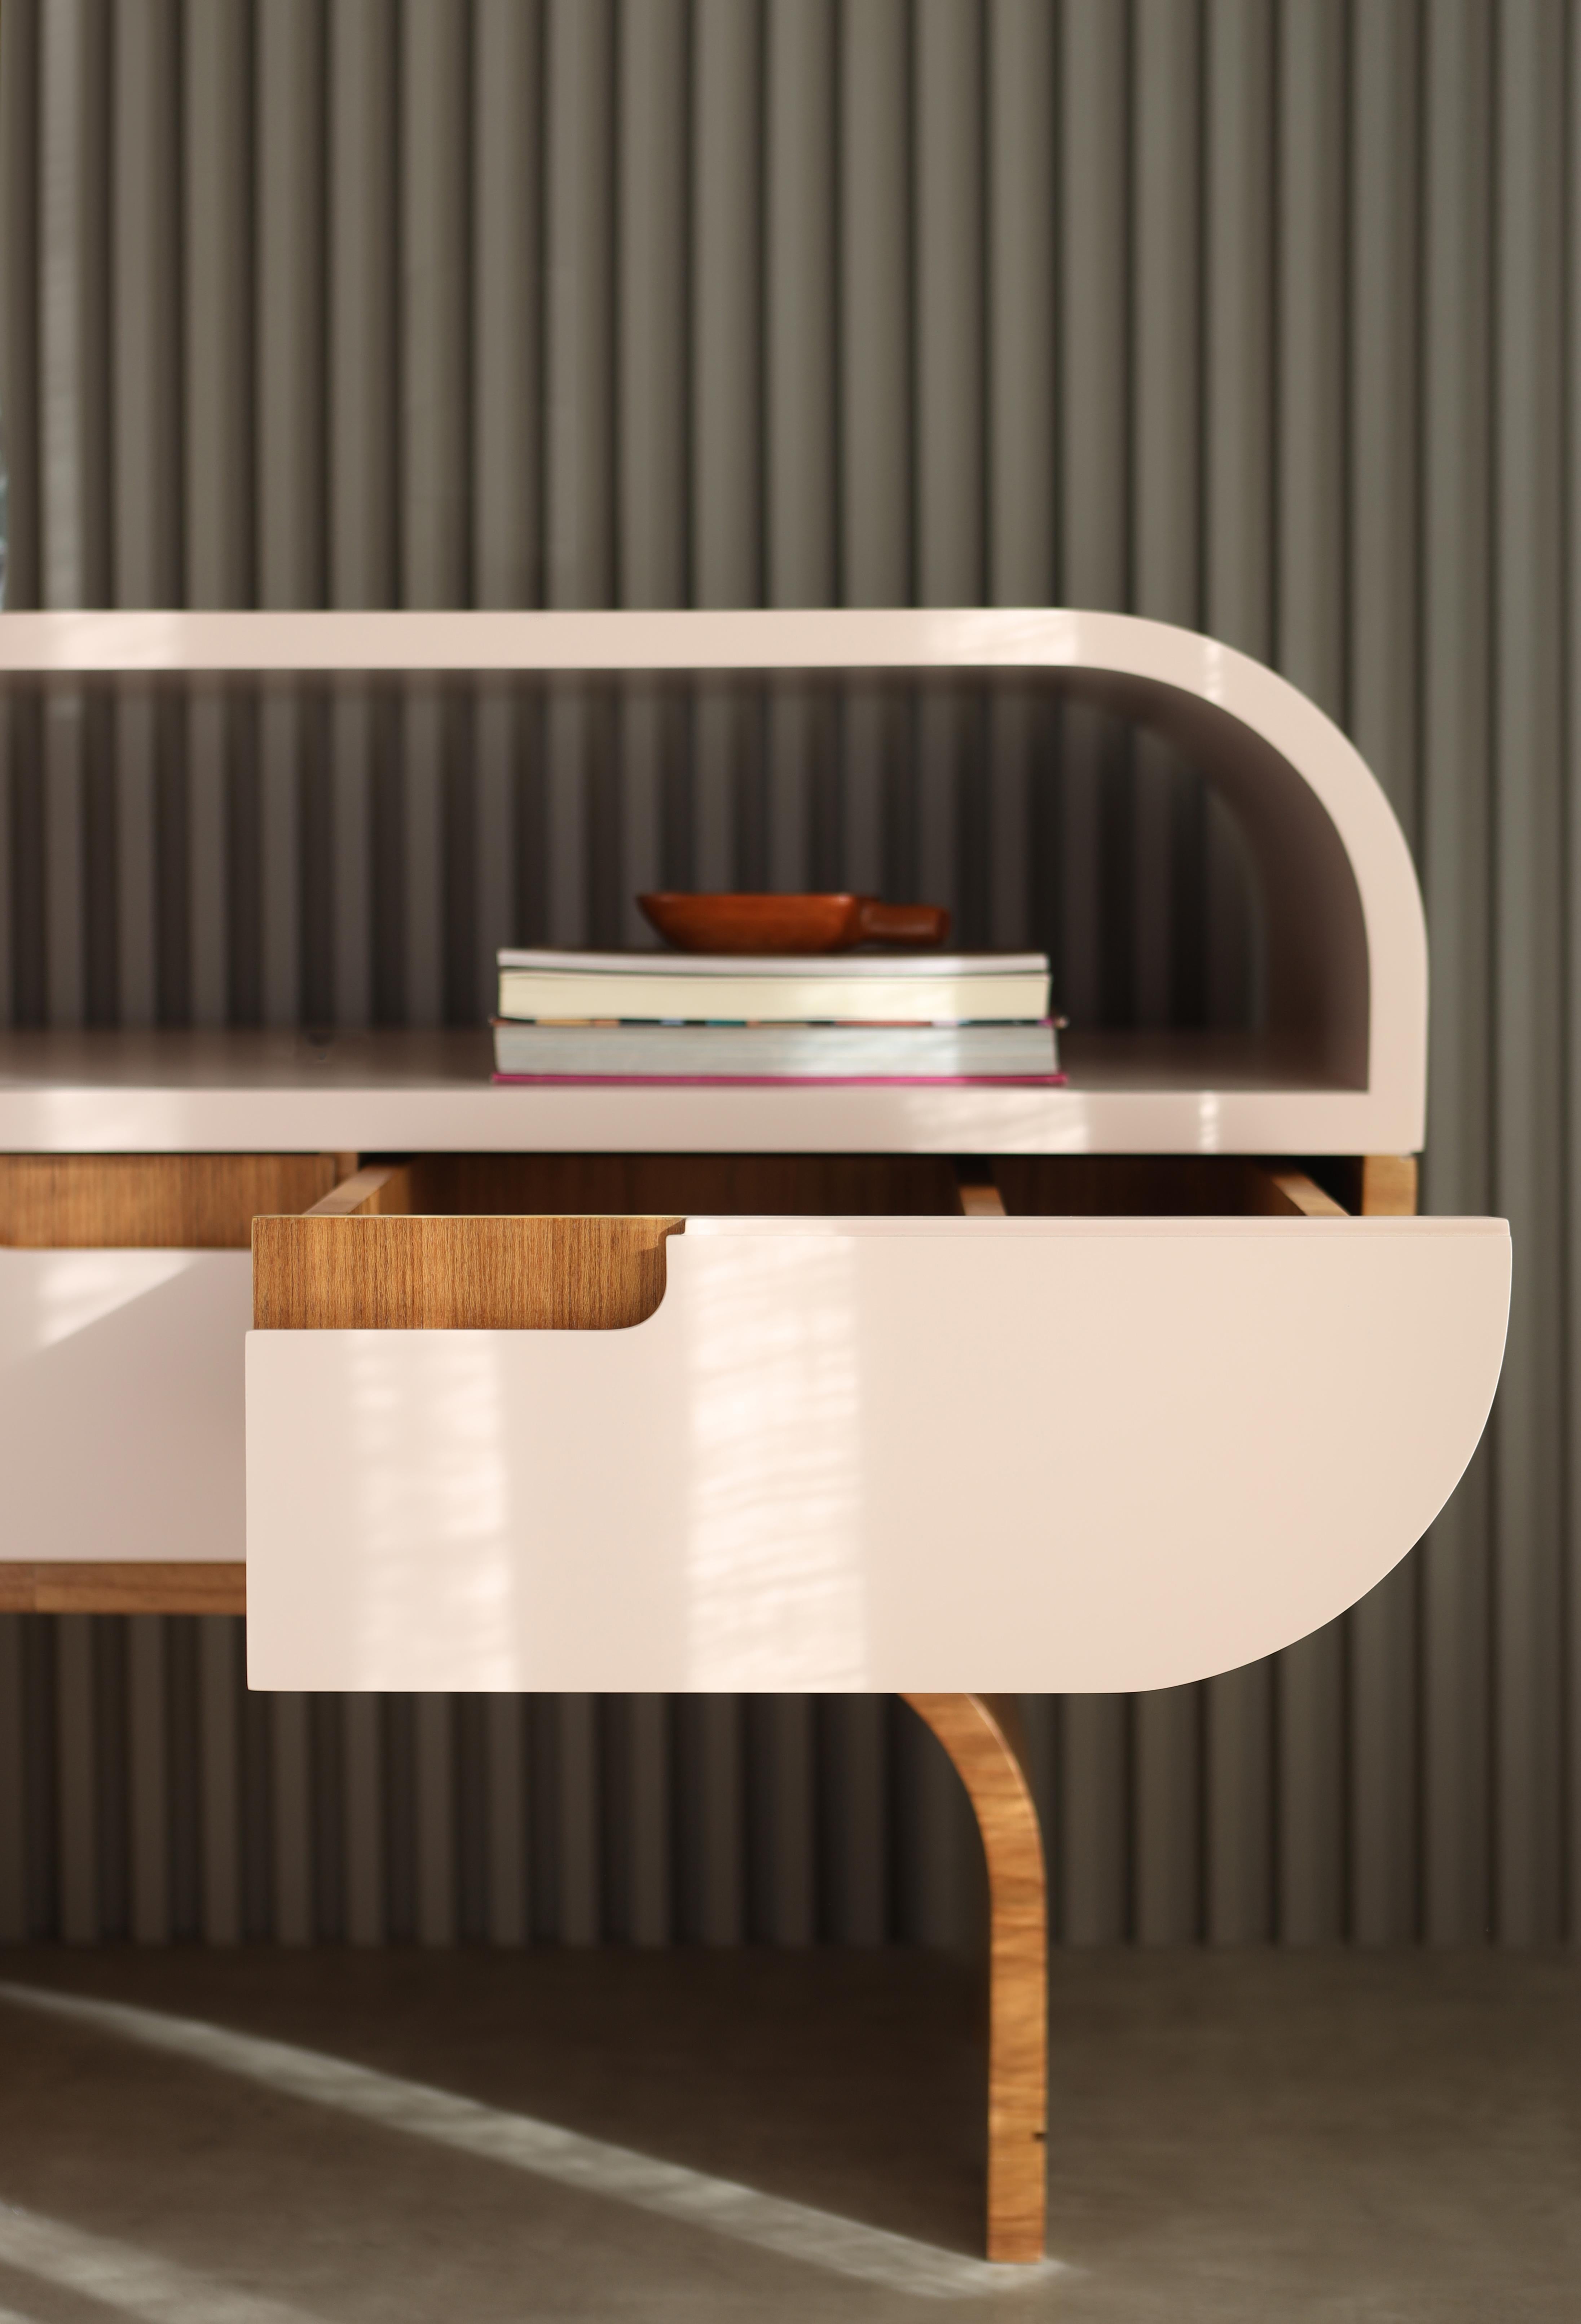 Avec un design inspiré des années 1960, la table de chevet Midi est produite dans une plaque de bois industrialisée avec une finition en feuille naturelle et laquée.

La table de chevet Midi peut être produite dans la plus grande taille avec deux